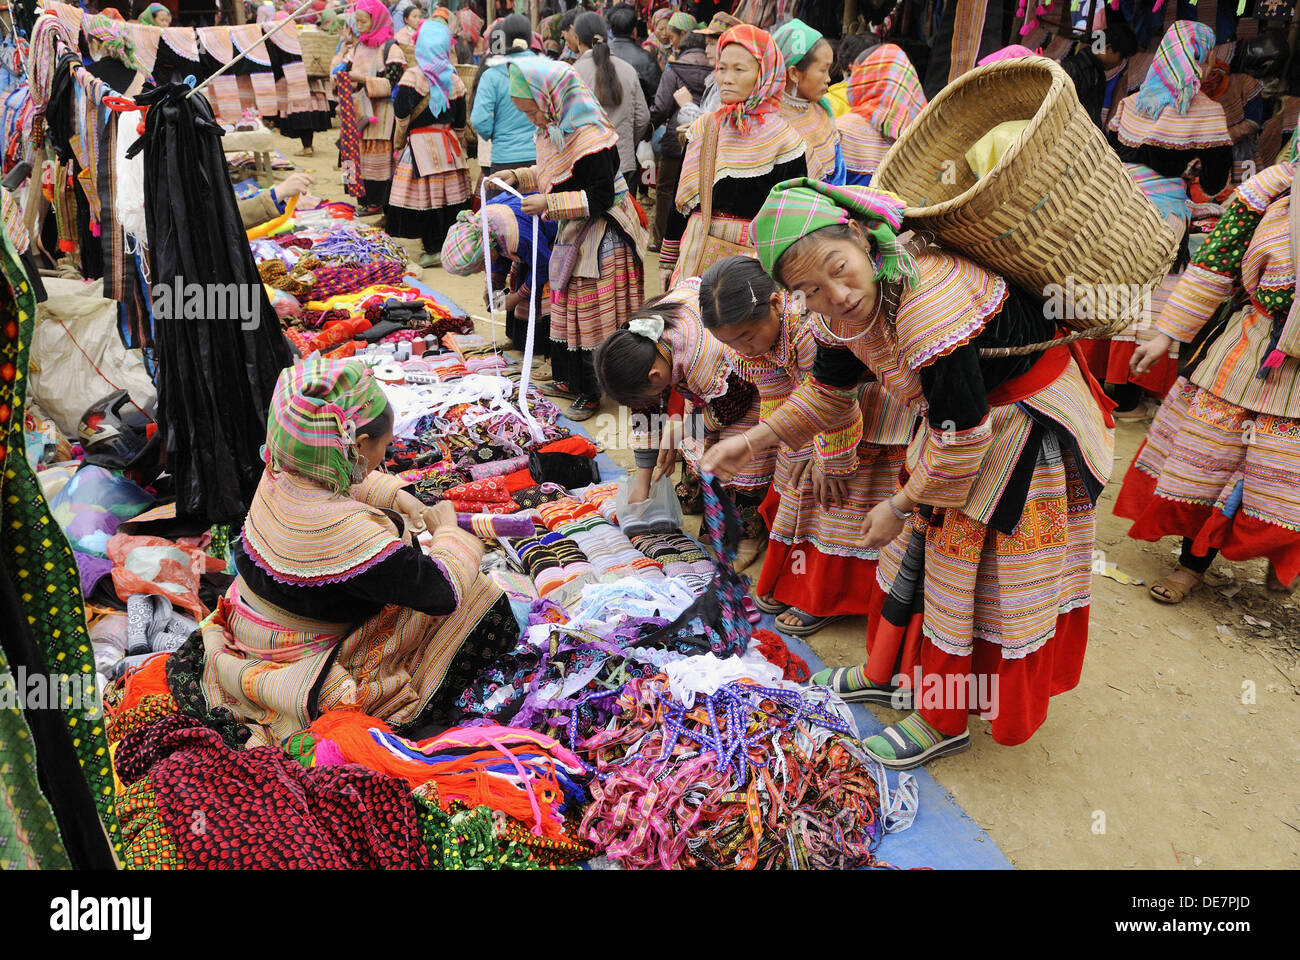 RM, concesso in licenza, nessun modello di rilascio - editoriale soltanto. donna del fiore la minoranza Hmong, tribù di montagna, shopping, mercato di animali Foto Stock